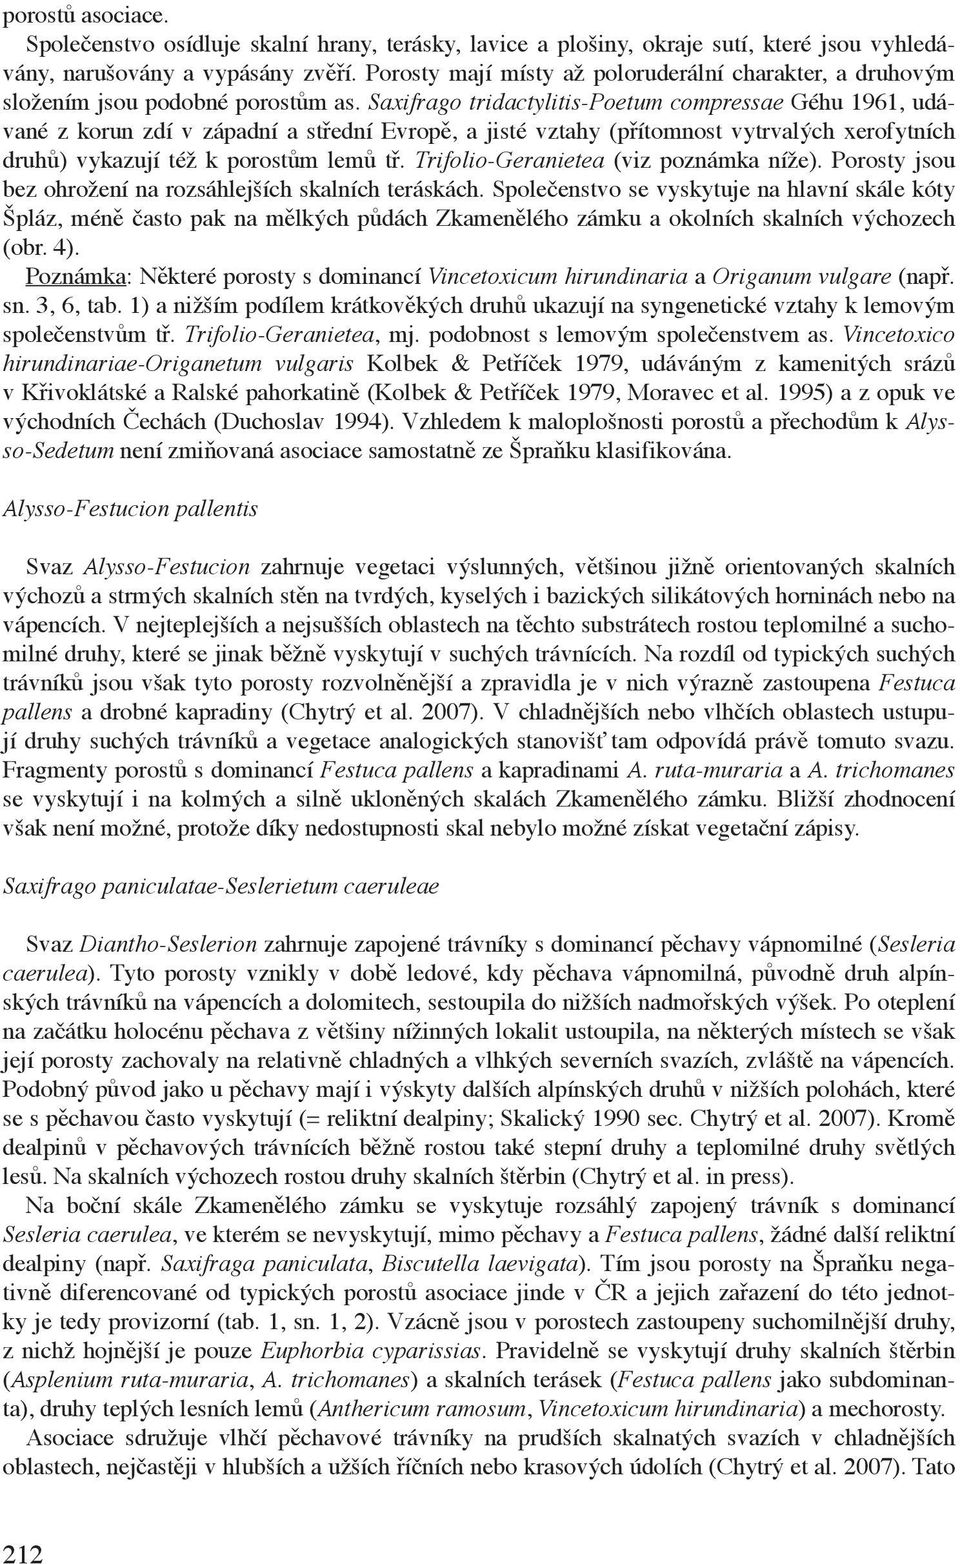 Saxifrago tridactylitis-poetum compressae Géhu 1961, udávané z korun zdí v západní a střední Evropě, a jisté vztahy (přítomnost vytrvalých xerofytních druhů) vykazují též k porostům lemů tř.